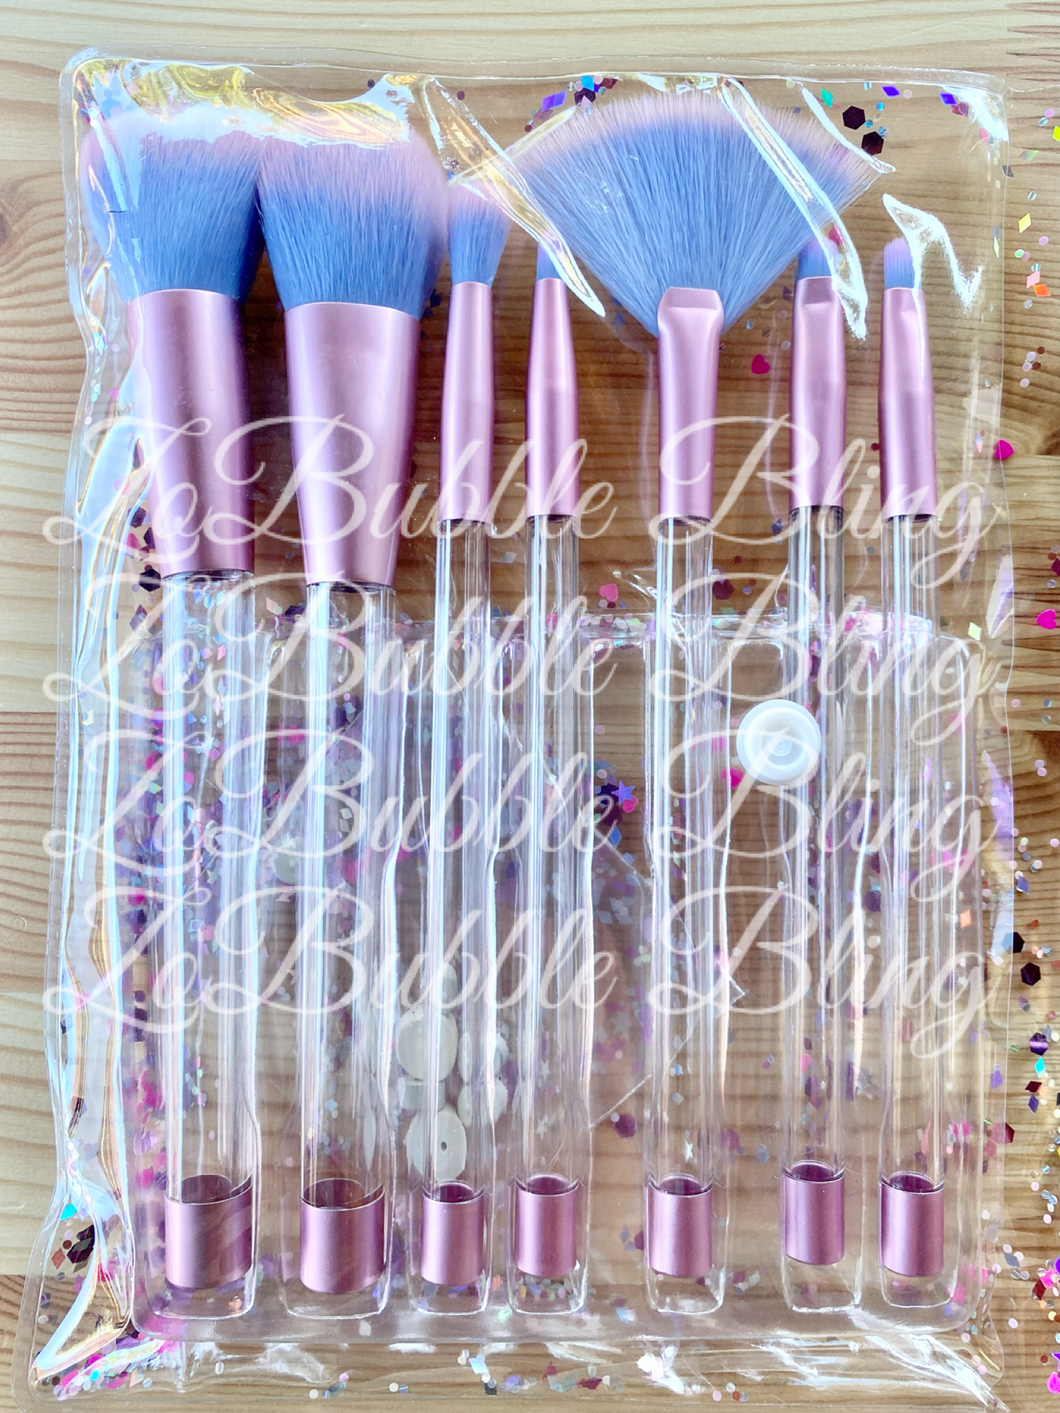 ZBB GLITTER Makeup Brush Set (7 brushes)